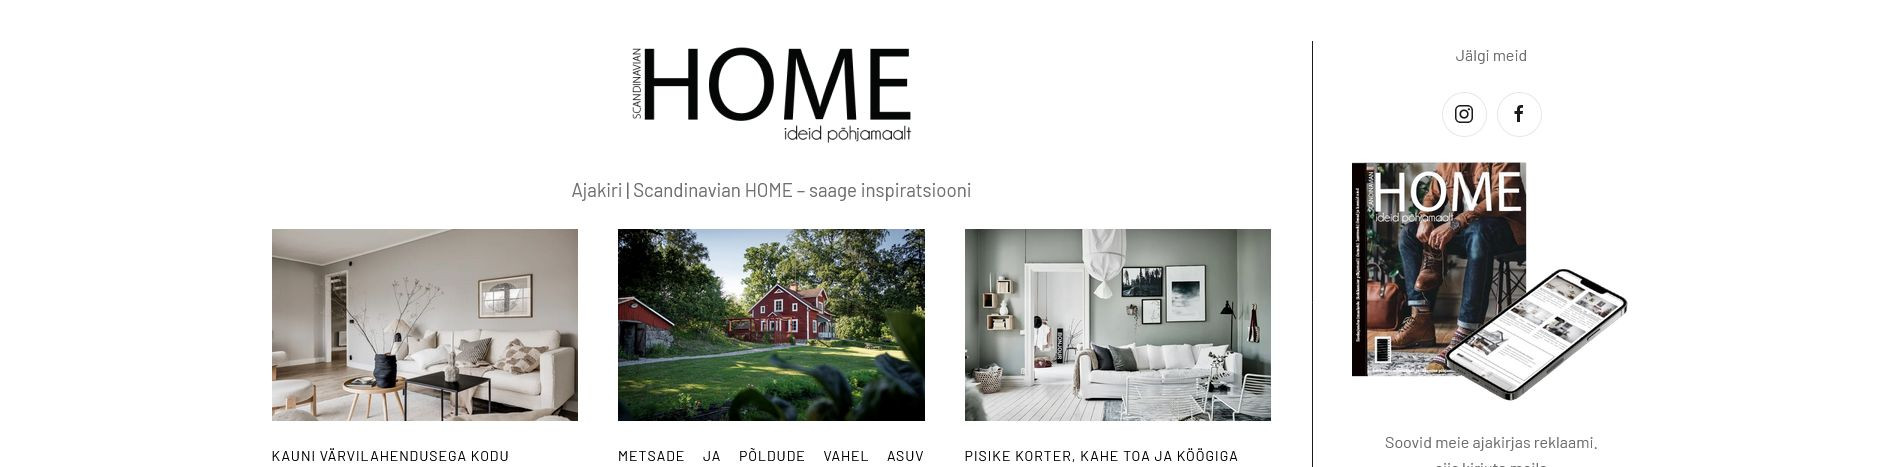 Scandinavian Home on veebiajakiri lugejatele, mis kajastab suures mahus sisustusideid, kokkamiseks retsepte, ilu uudiseid ja muud põnevat lugemist.